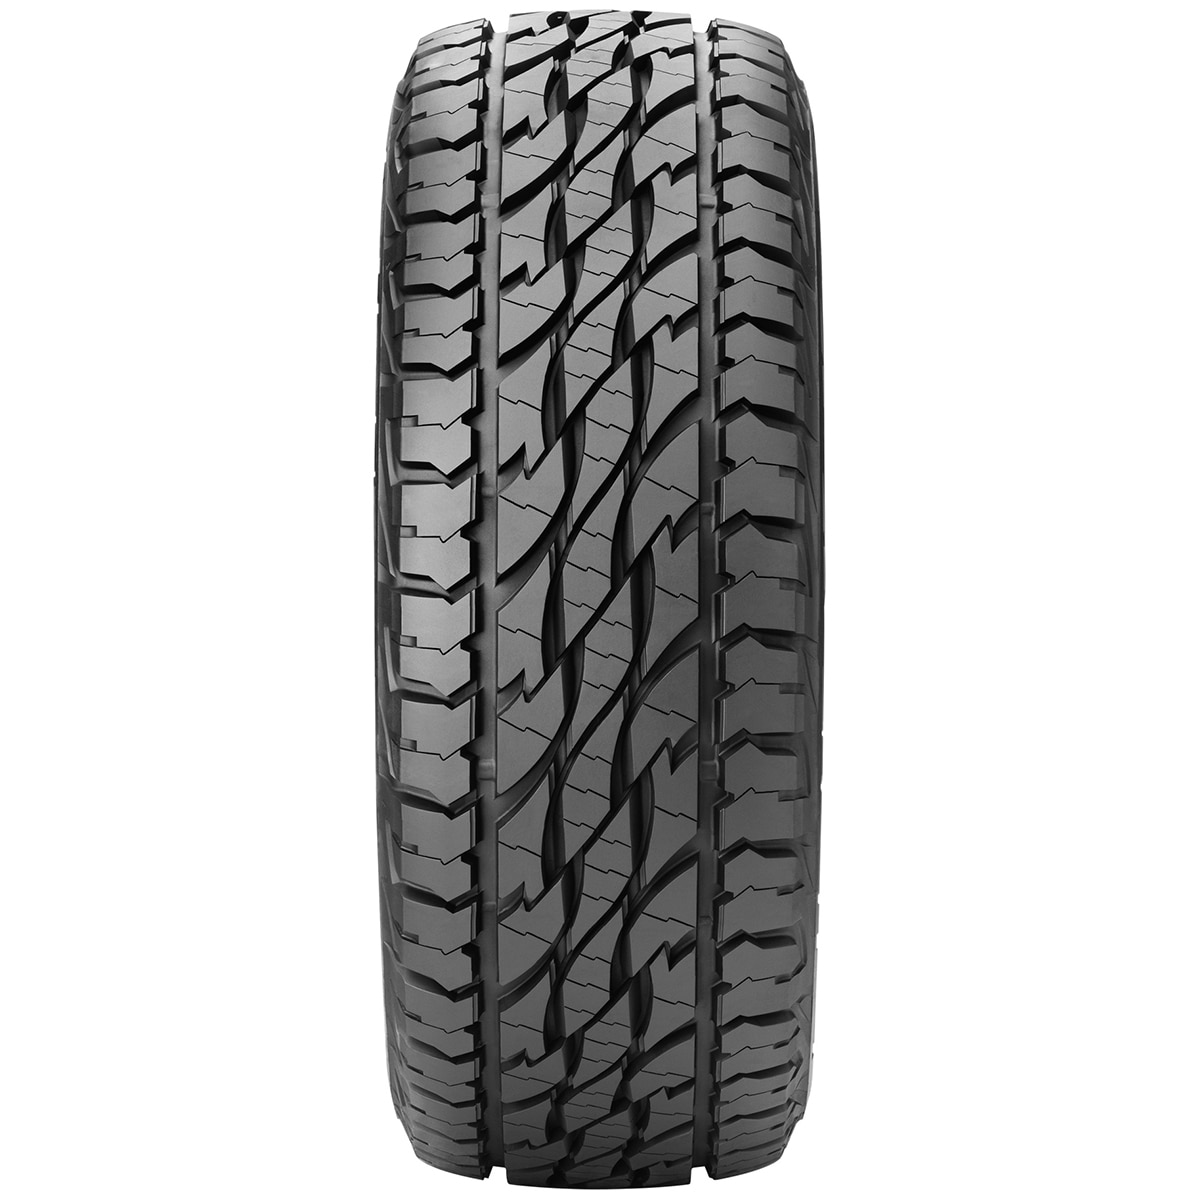 245/70R16LT 113S OWT D697 - Tyre